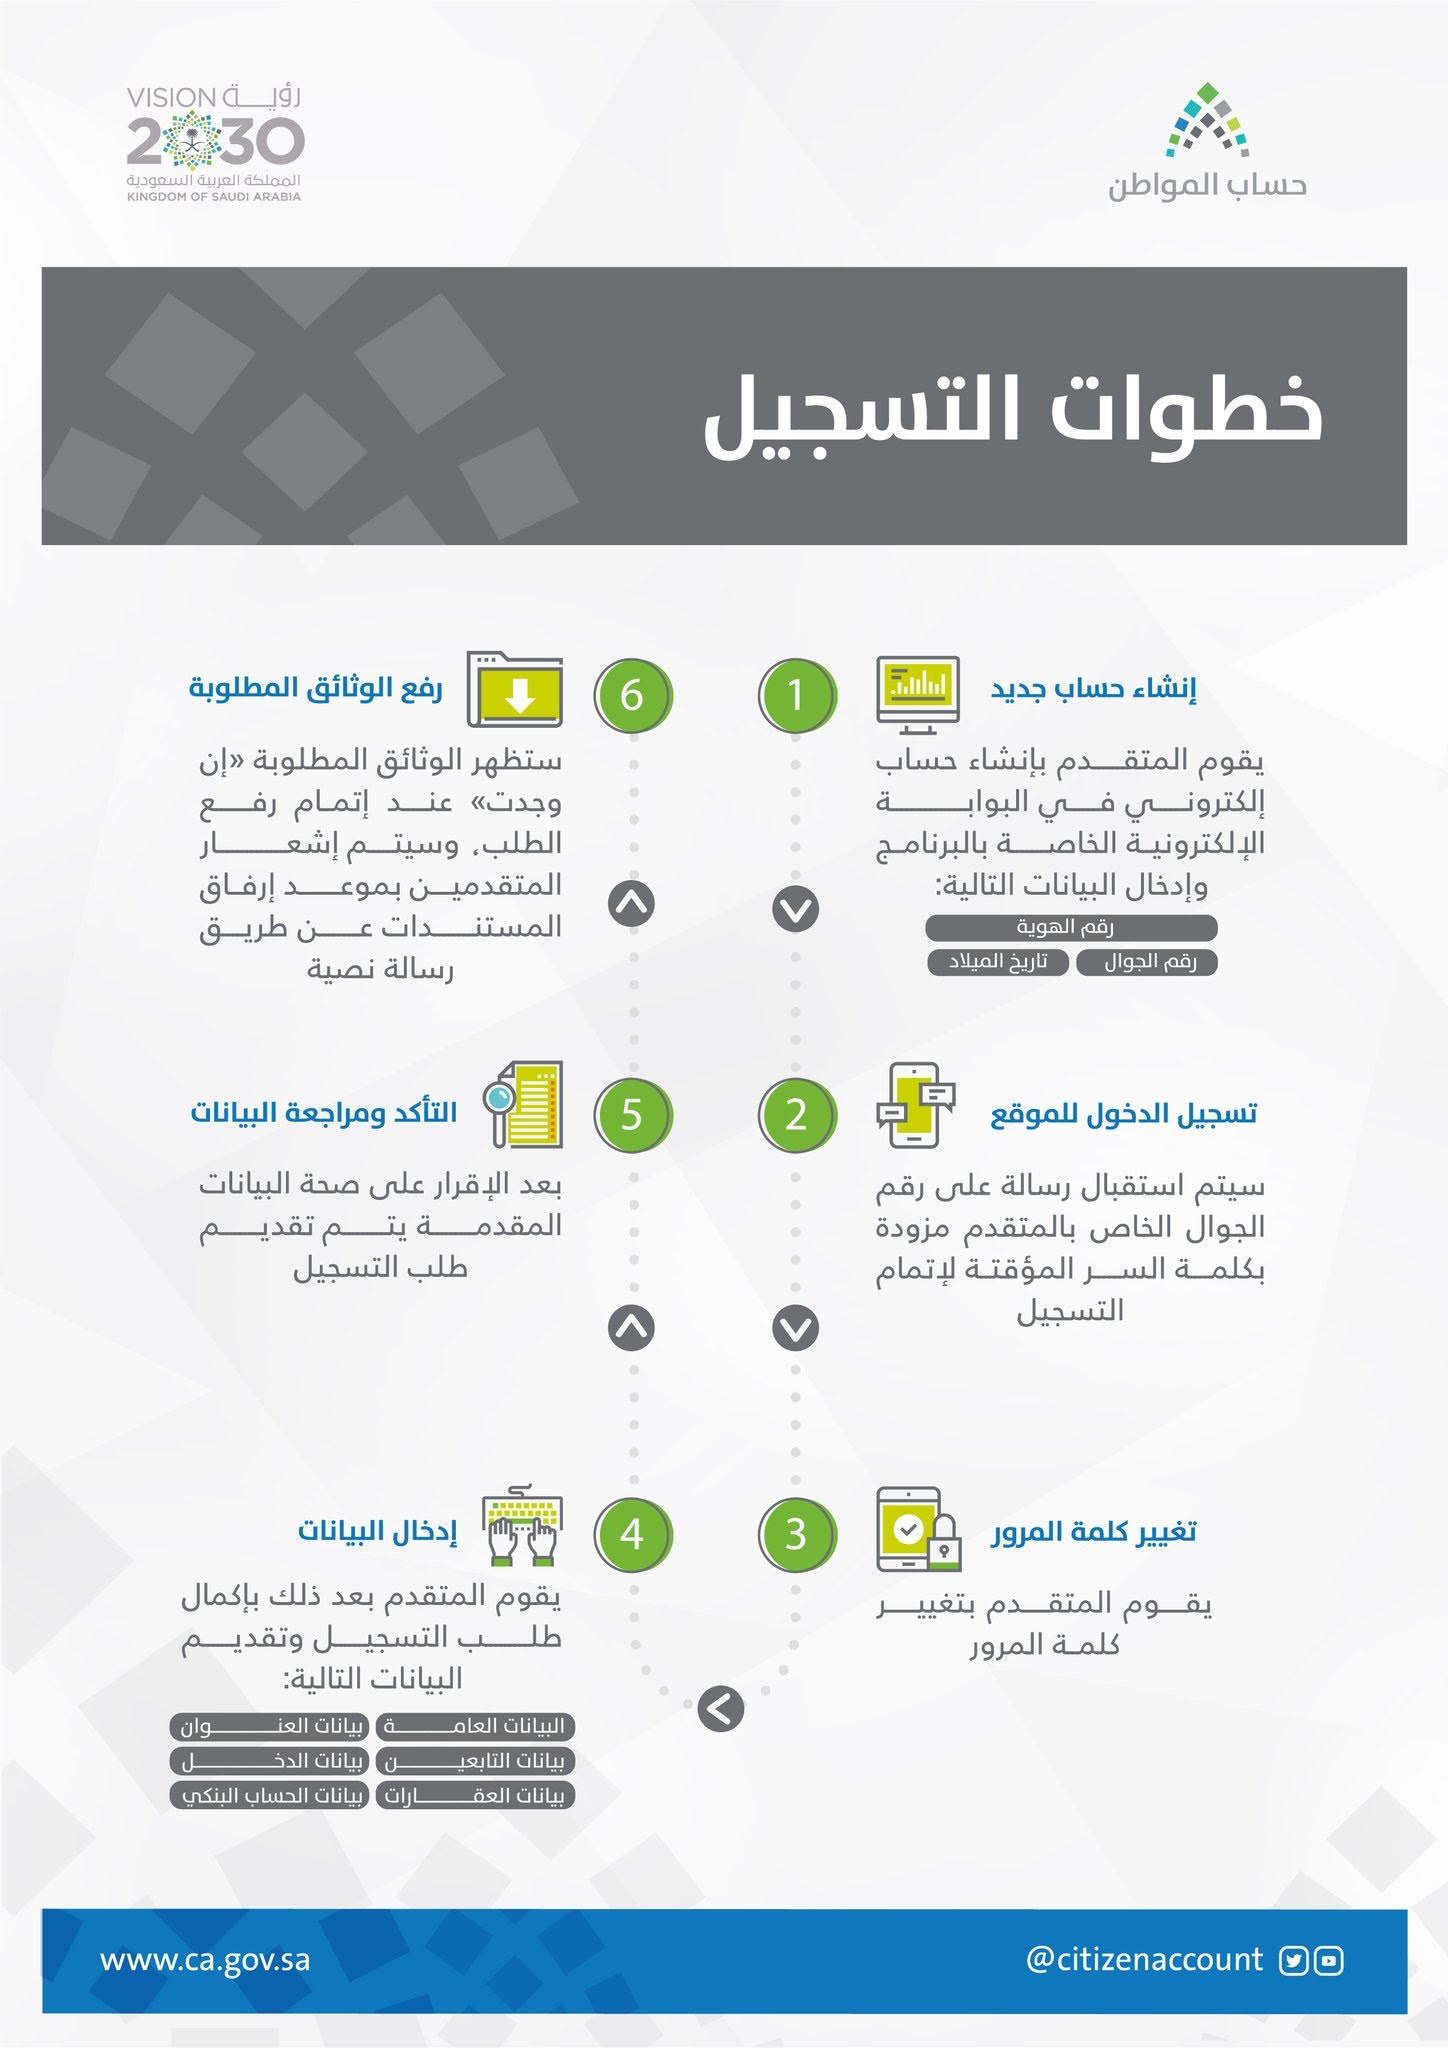 إنفوجرافيك.. التسجيل في حساب المواطن في 6 خطوات مبسطة